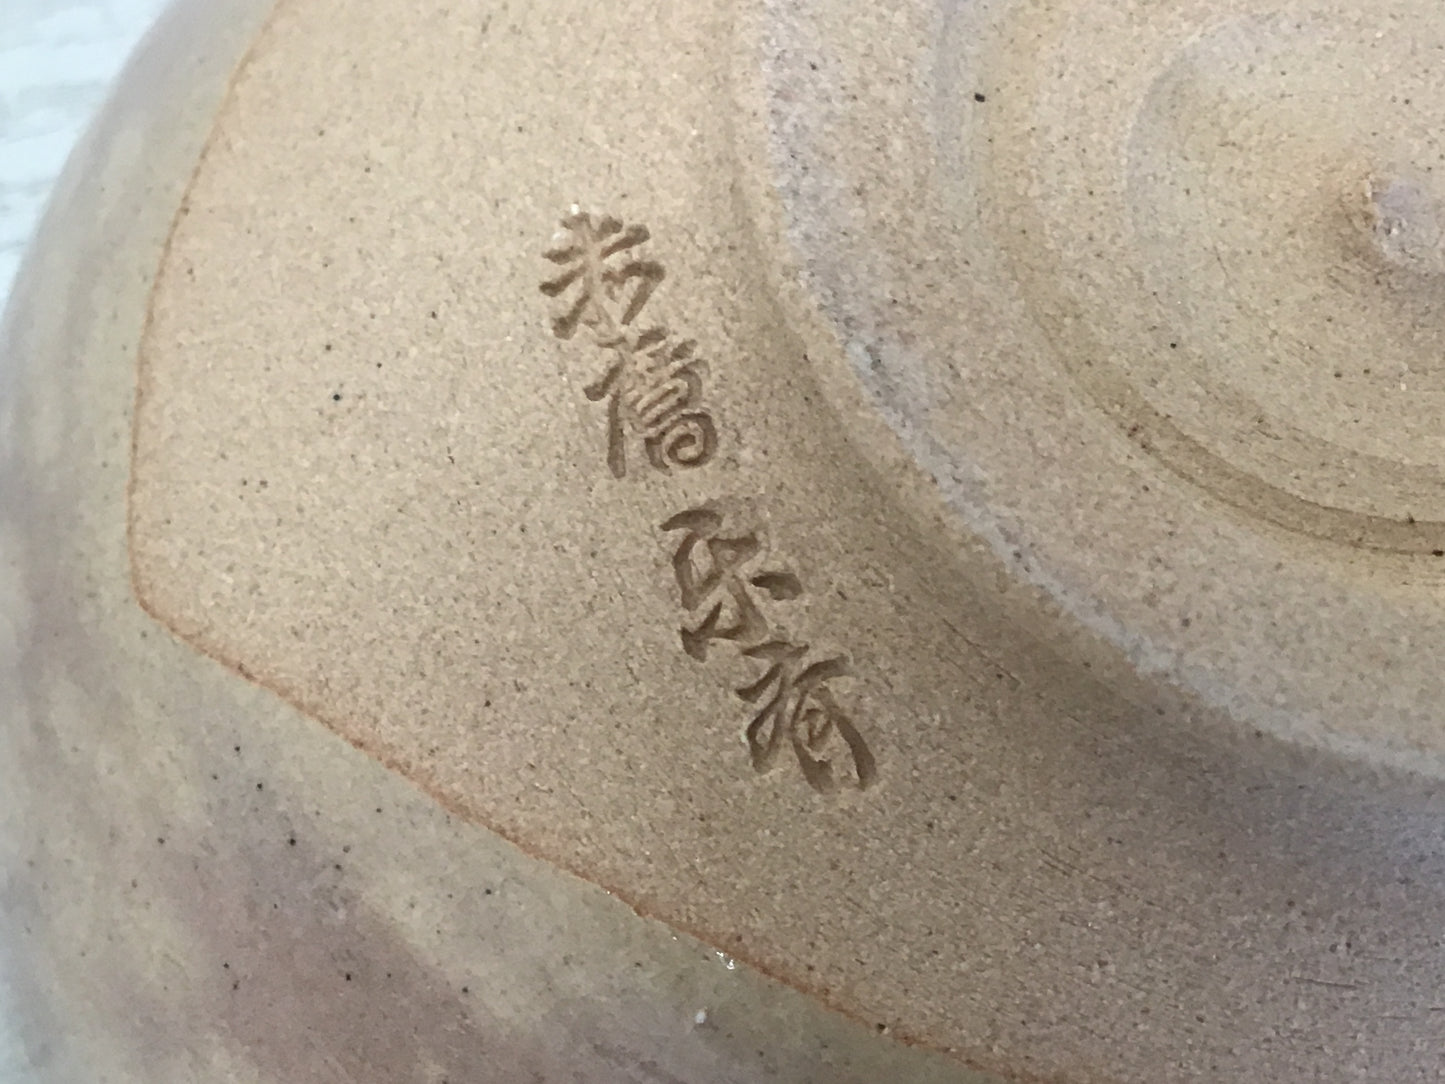 Y1478 CHAWAN Akahada-ware signed box Japanese bowl pottery Japan tea ceremony